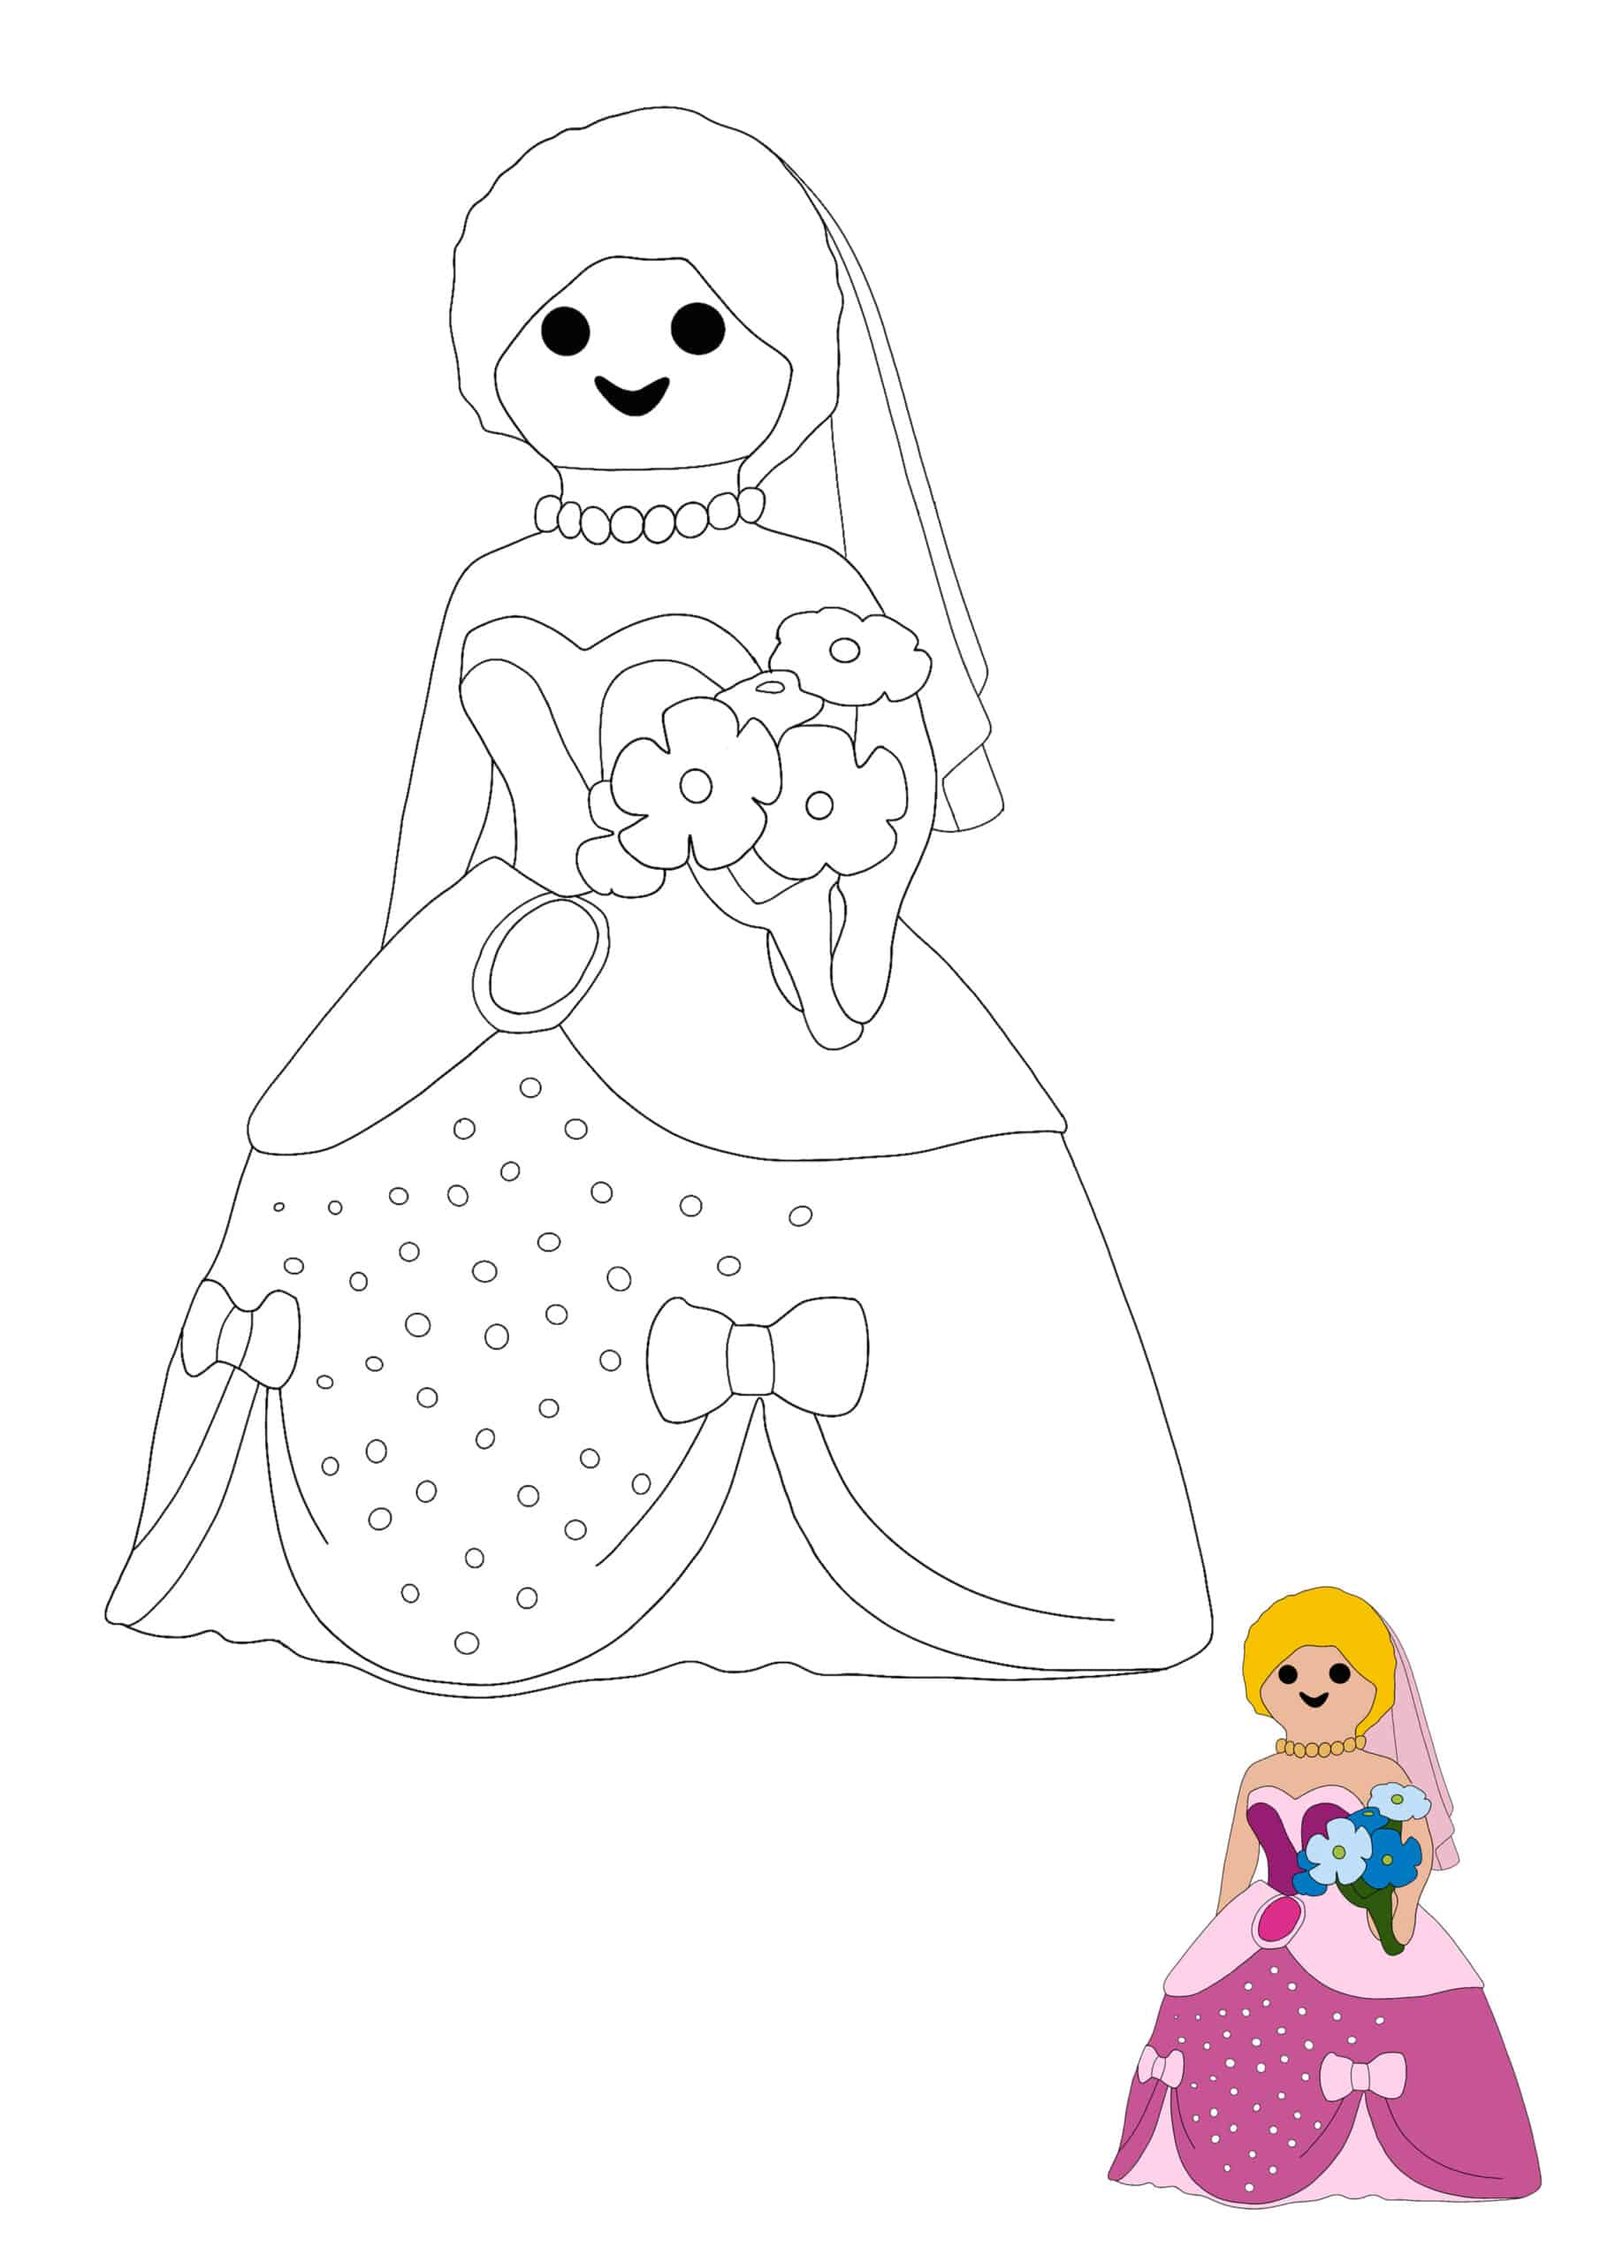 Playmobil Princess coloring sheet